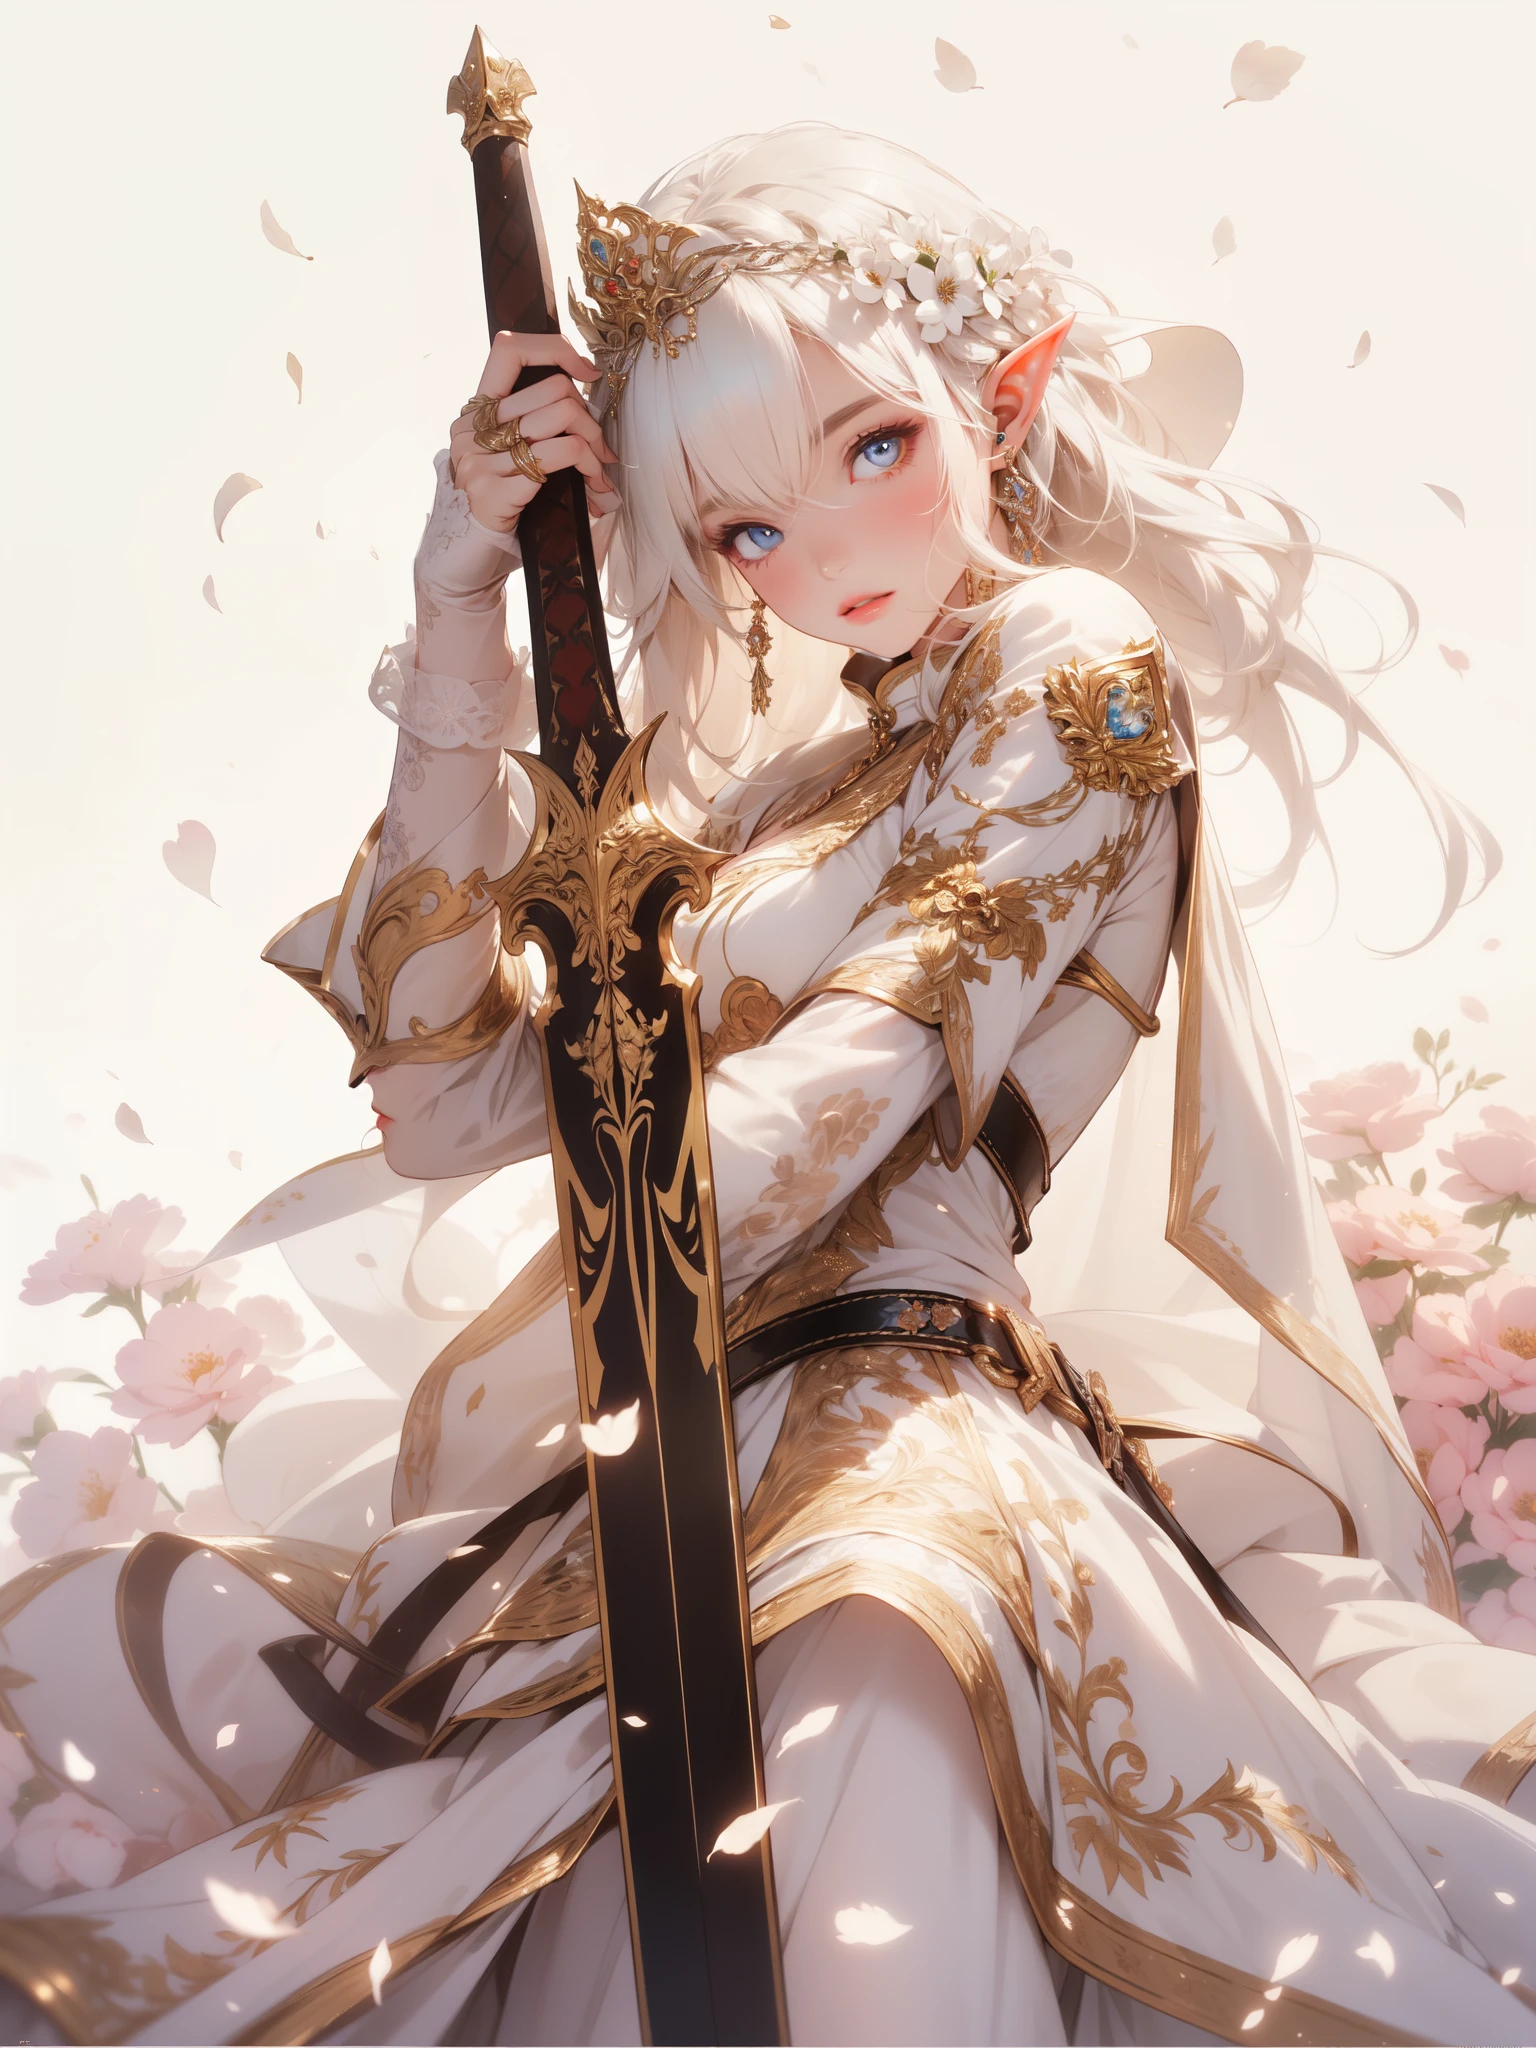 ((8k-Hintergrundbild einer äußerst detaillierten CG-Einheit, Meisterwerk, hohe Auflösung, Top Qualität, Top Qualitätのリアルテクスチャスキン)), (sehr schöne und attraktive Elfenkönigin), Die Elfenkönigin, mit einem Ausdruck der Entschlossenheit, zieht ihr Schwert in einer schlichten, aber eleganten Umgebung, die mit zarten Blumen geschmückt ist, ihr cremefarbenes Kleid verleiht der Szene einen Hauch königlicher Anmut, (unordentlich, weiß glänzendes Haar, blaue Augen, leuchtende Augen, prallen Lippen, Weißhäutig, mittlere Brust), (detailliertes Königinnenkostüm, Kleid), 